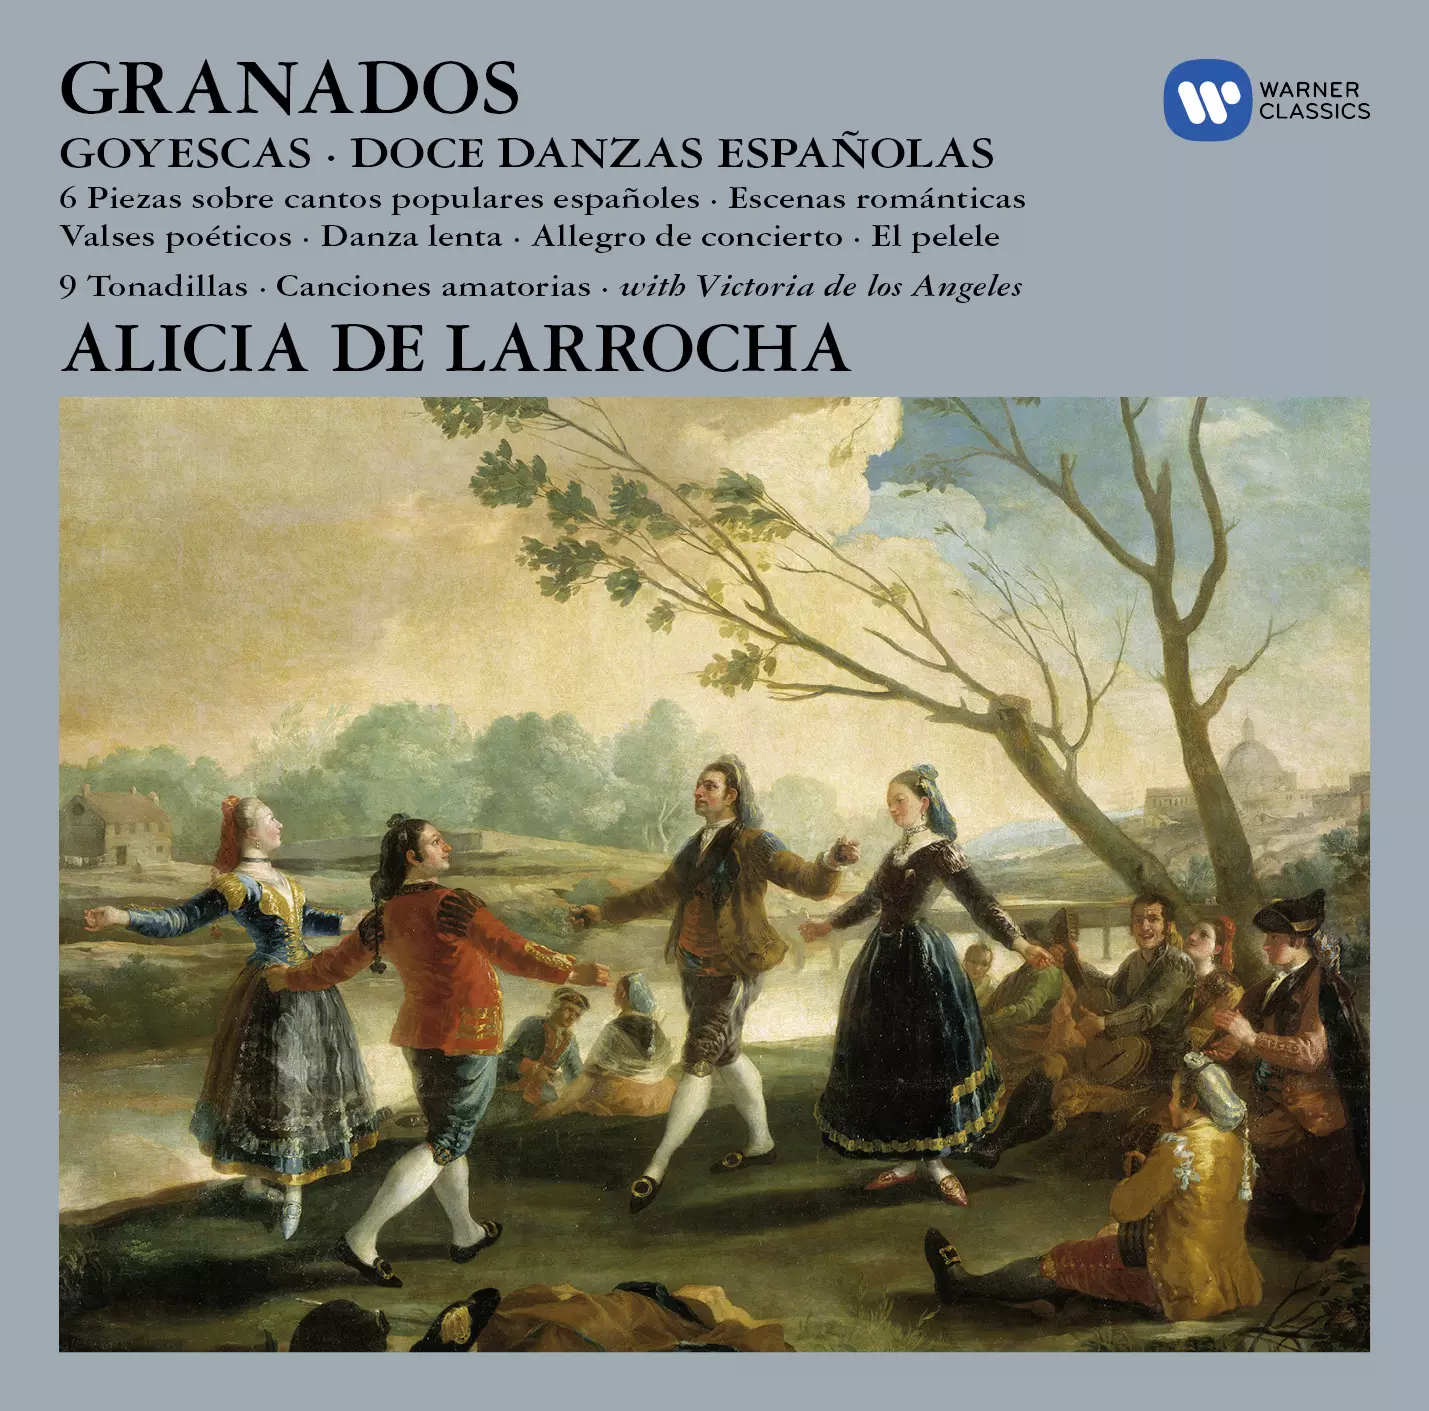 Granados Alicia de Larrocha - Original Jackets